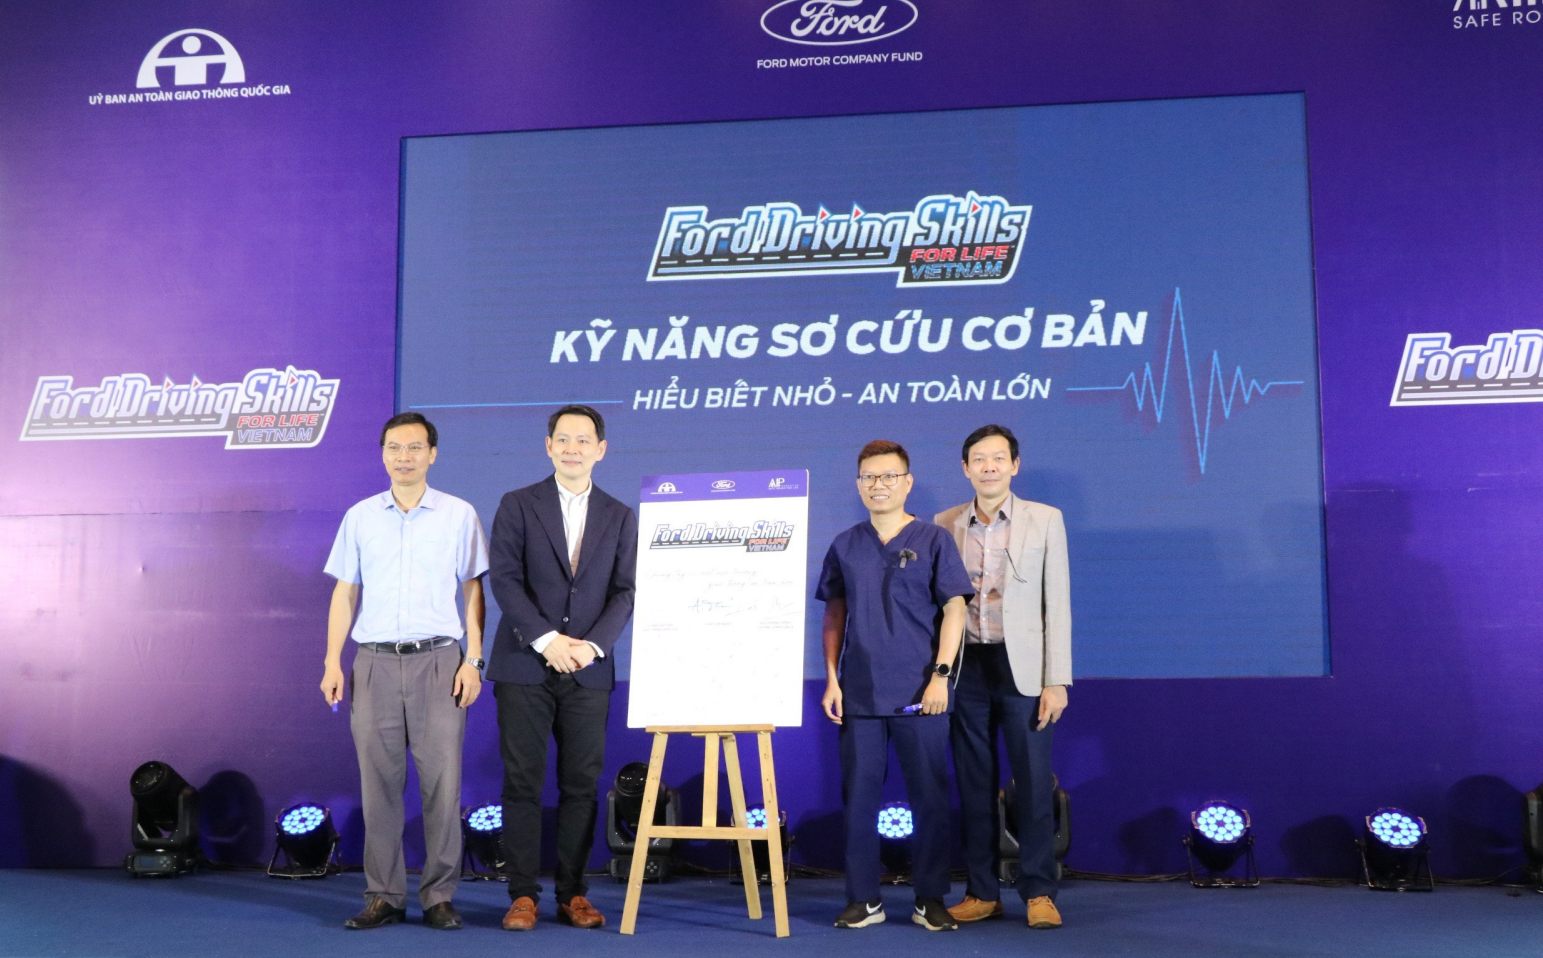 Ford Việt Nam ra mắt dự án chia sẻ kĩ năng sơ cứu cơ bản tới cộng đồng